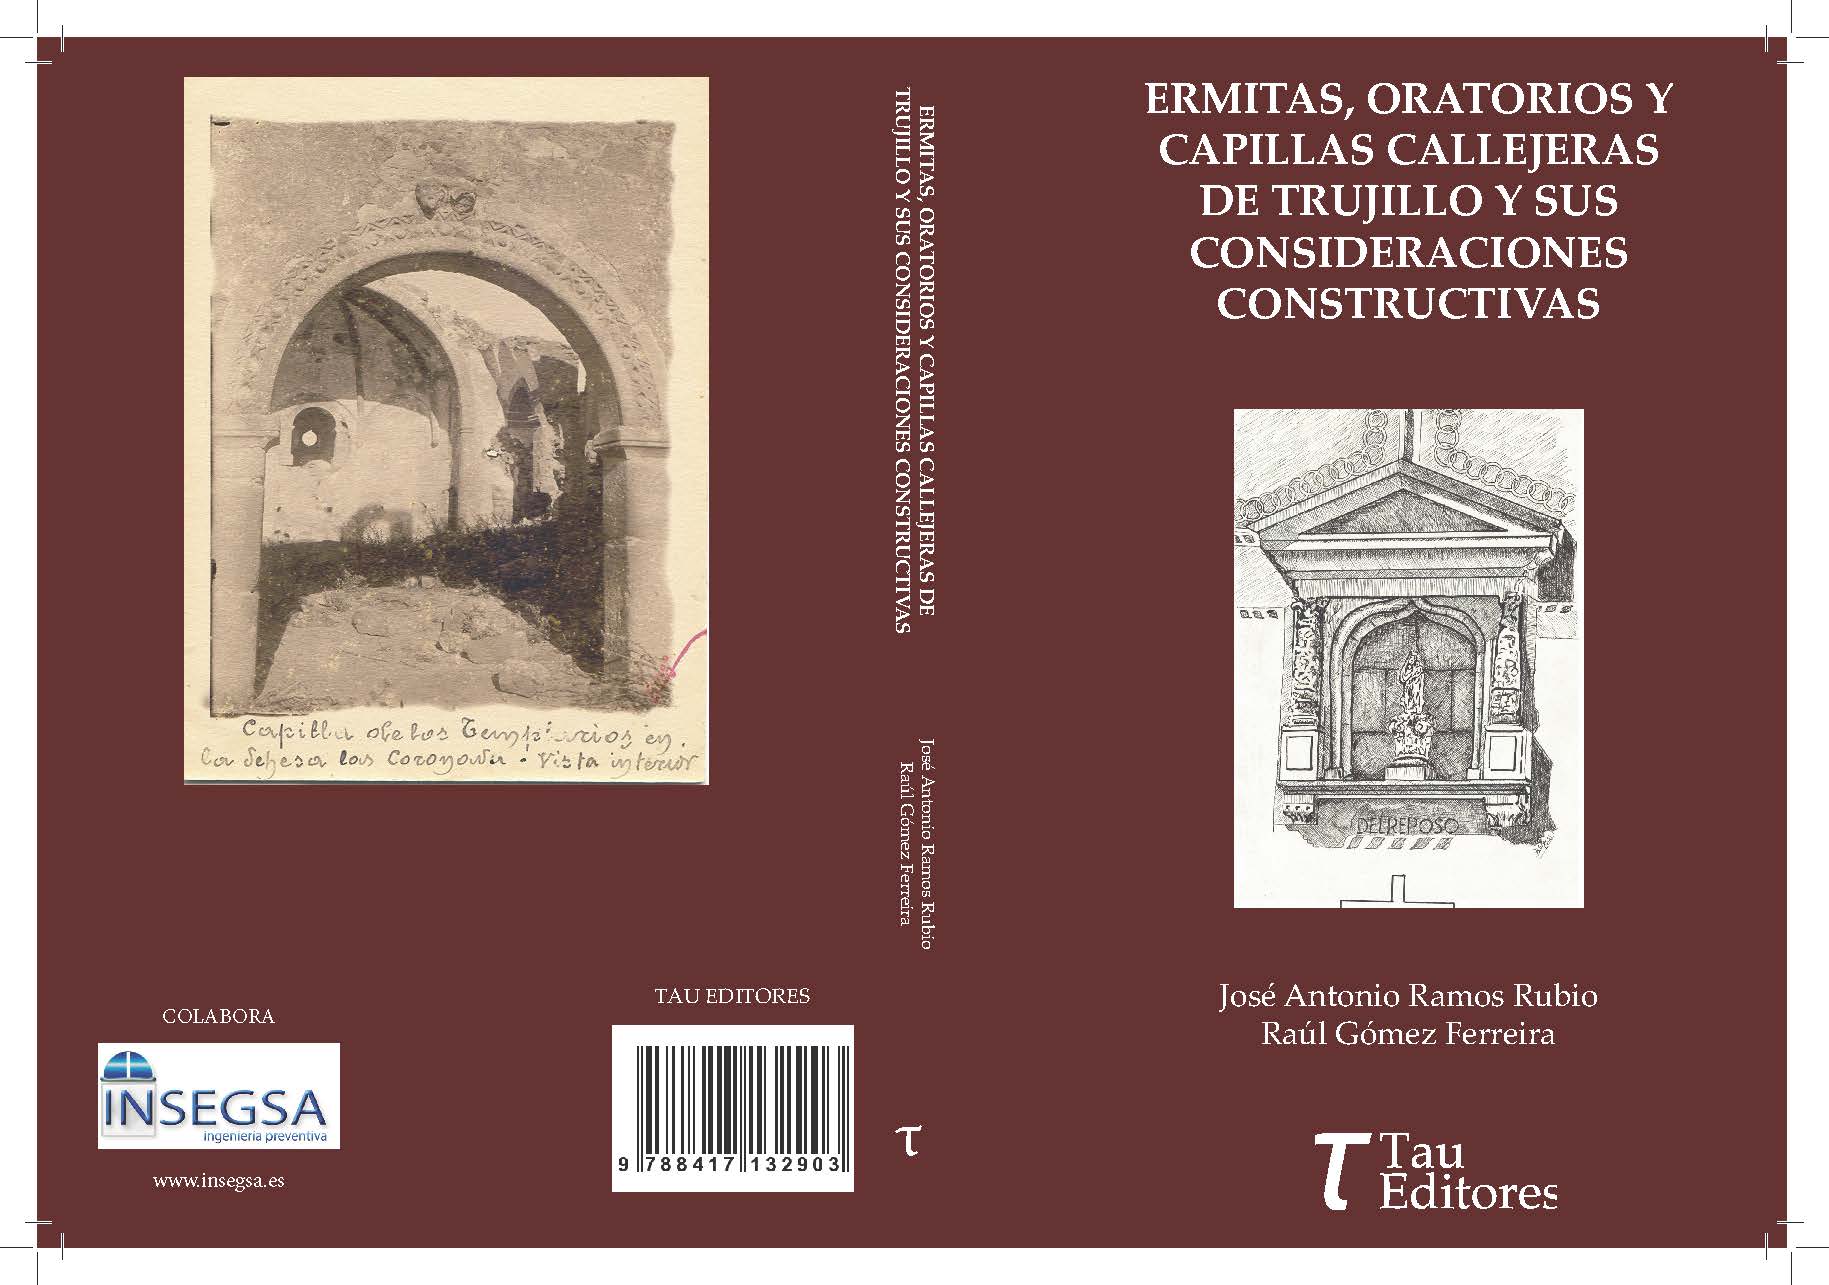 Patrocinio del libro “Ermitas, oratorios y capillas callejeras de Trujillo y sus consideraciones constructivas”